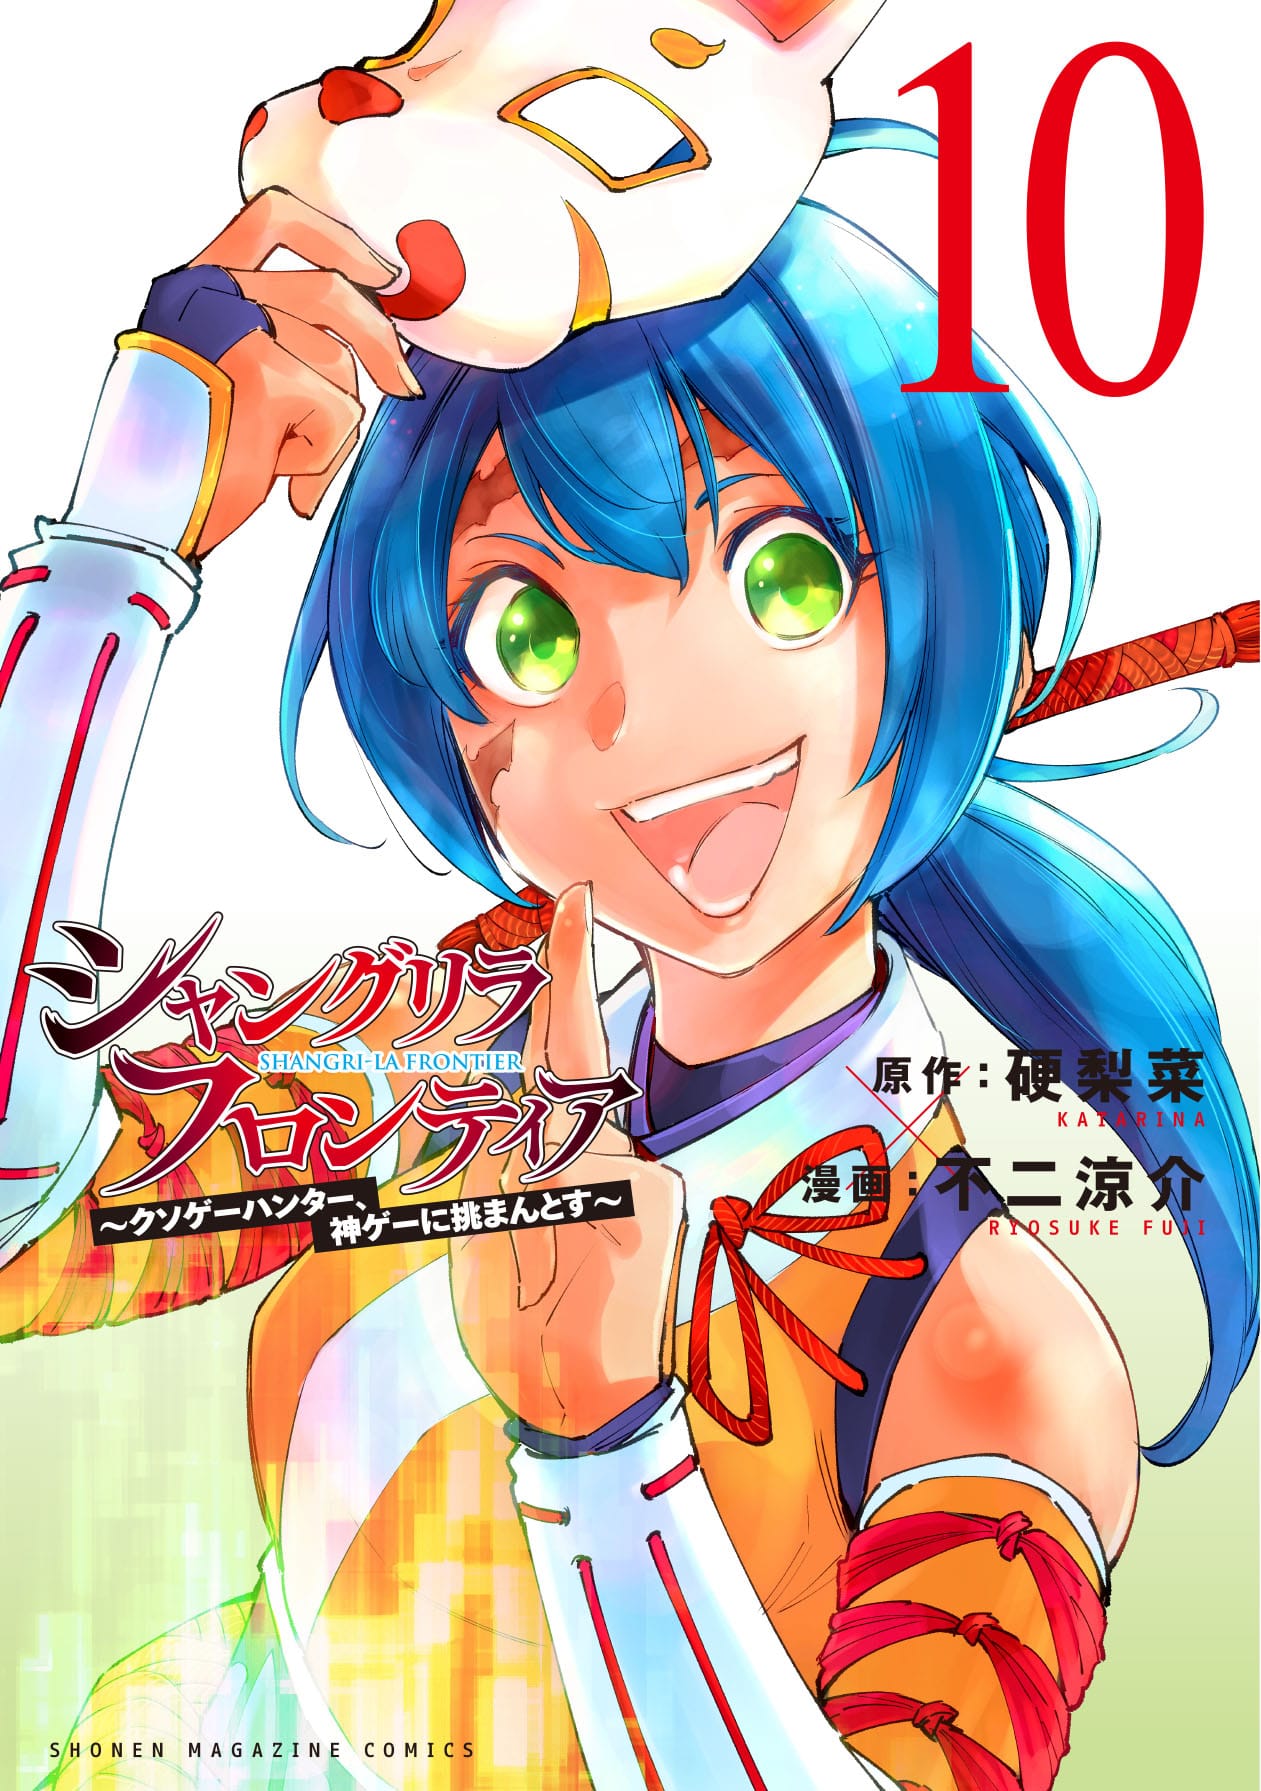 シャングリラ・フロンティア 第10巻 9月16日発売! 特装版も!